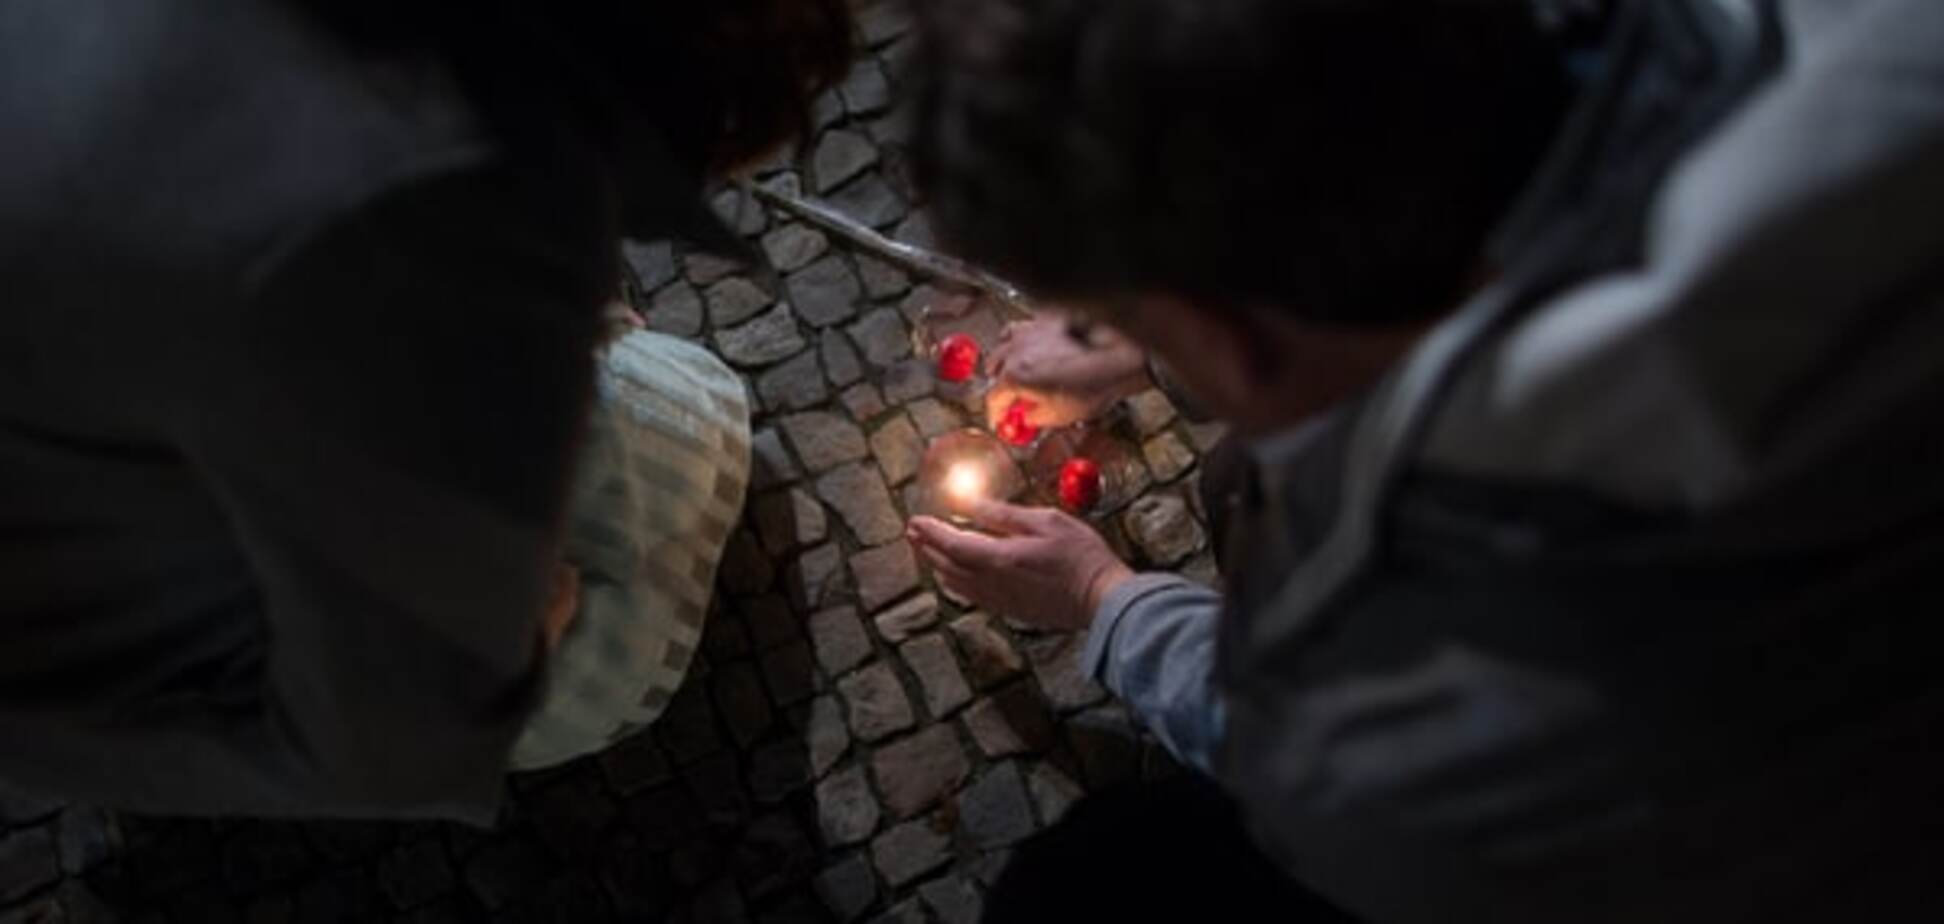 Во время терактов в Париже украинцы не пострадали - МИД